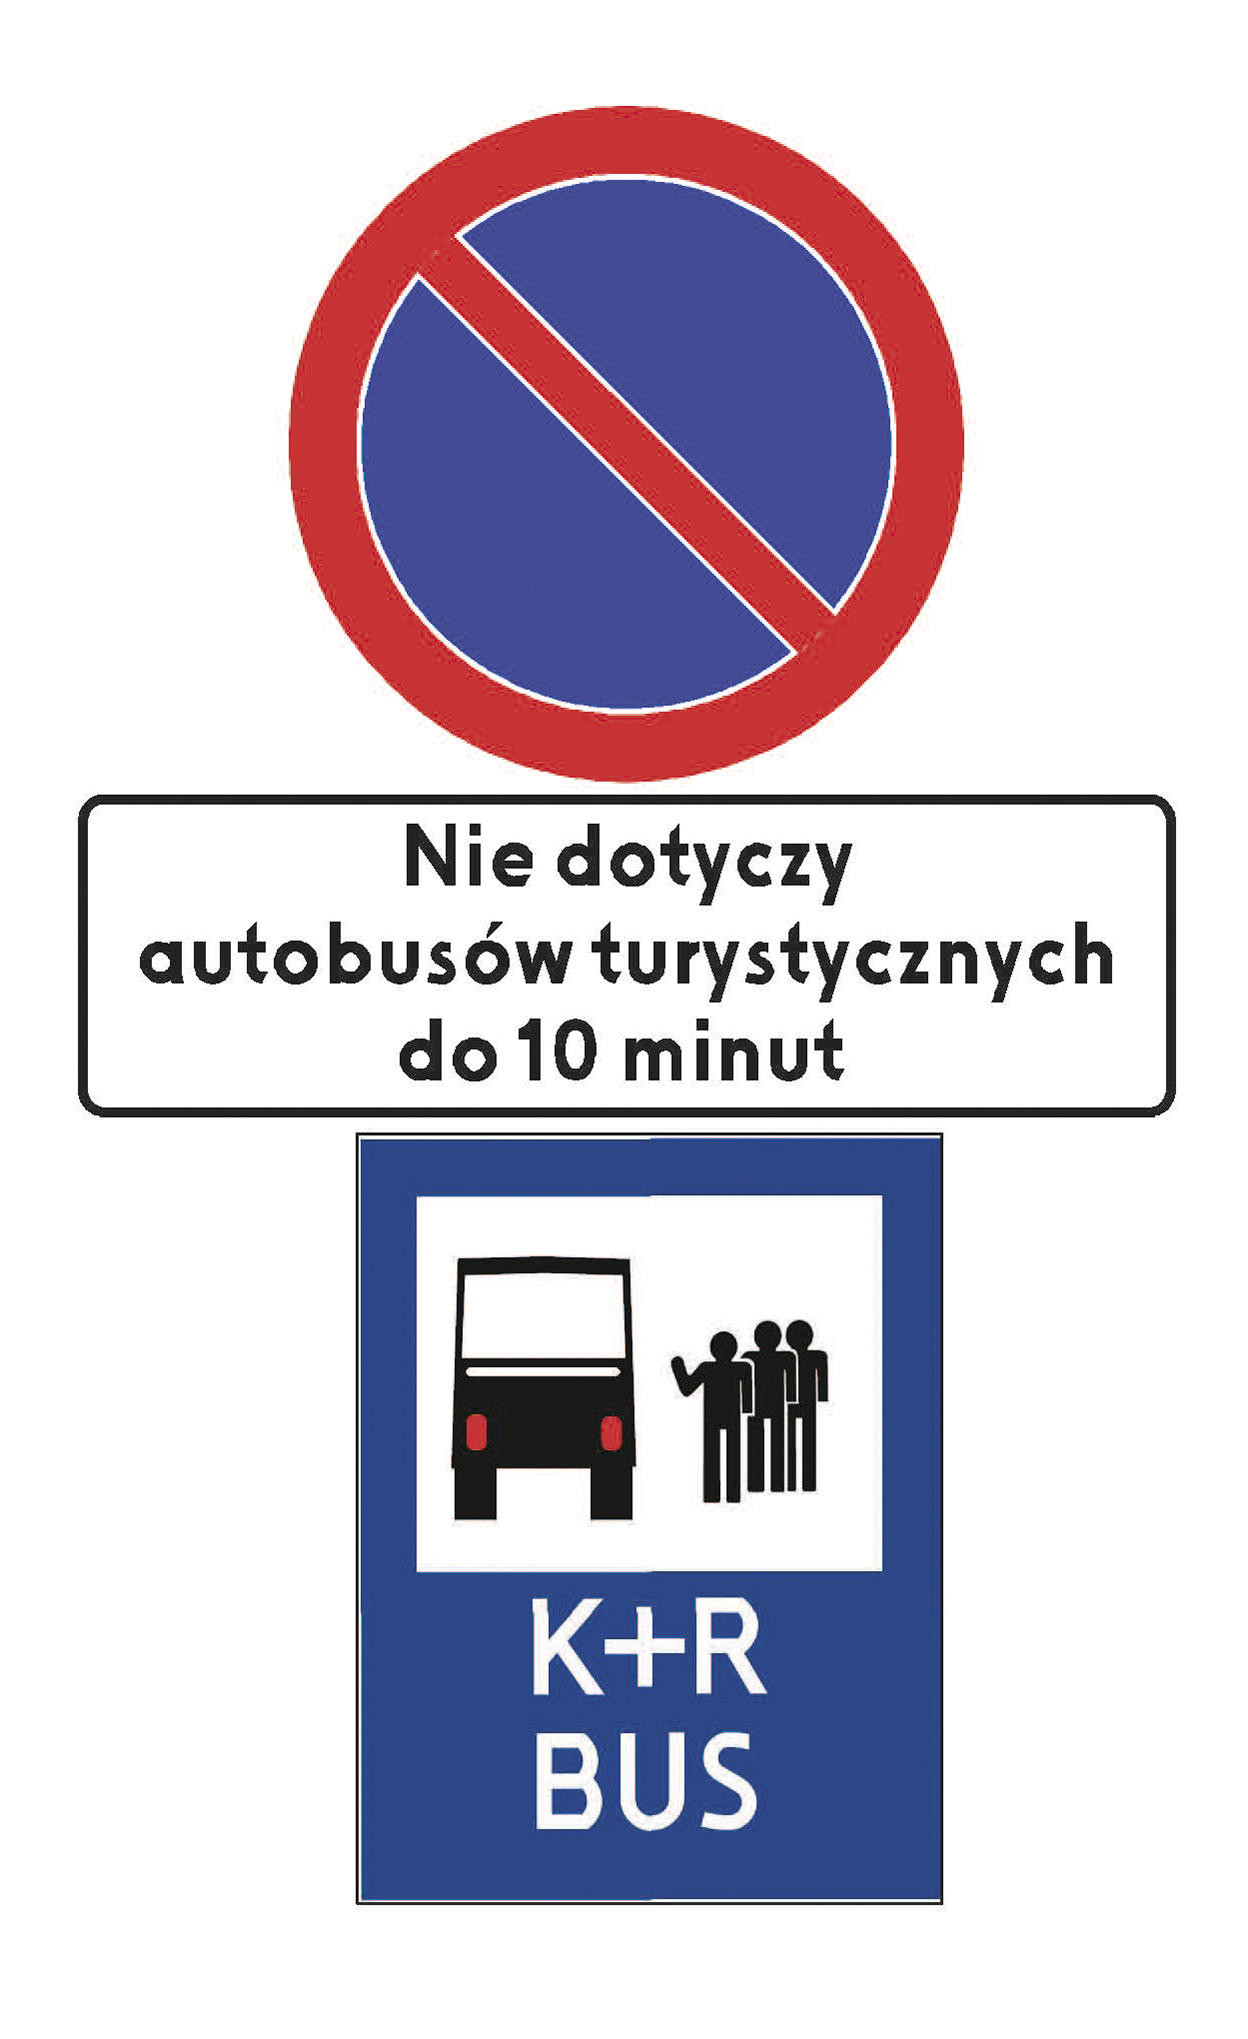 znak B-35 ("zakaz postoju") z tabliczką o treści: "Nie dotyczy autobusów turystycznych do 10 min."